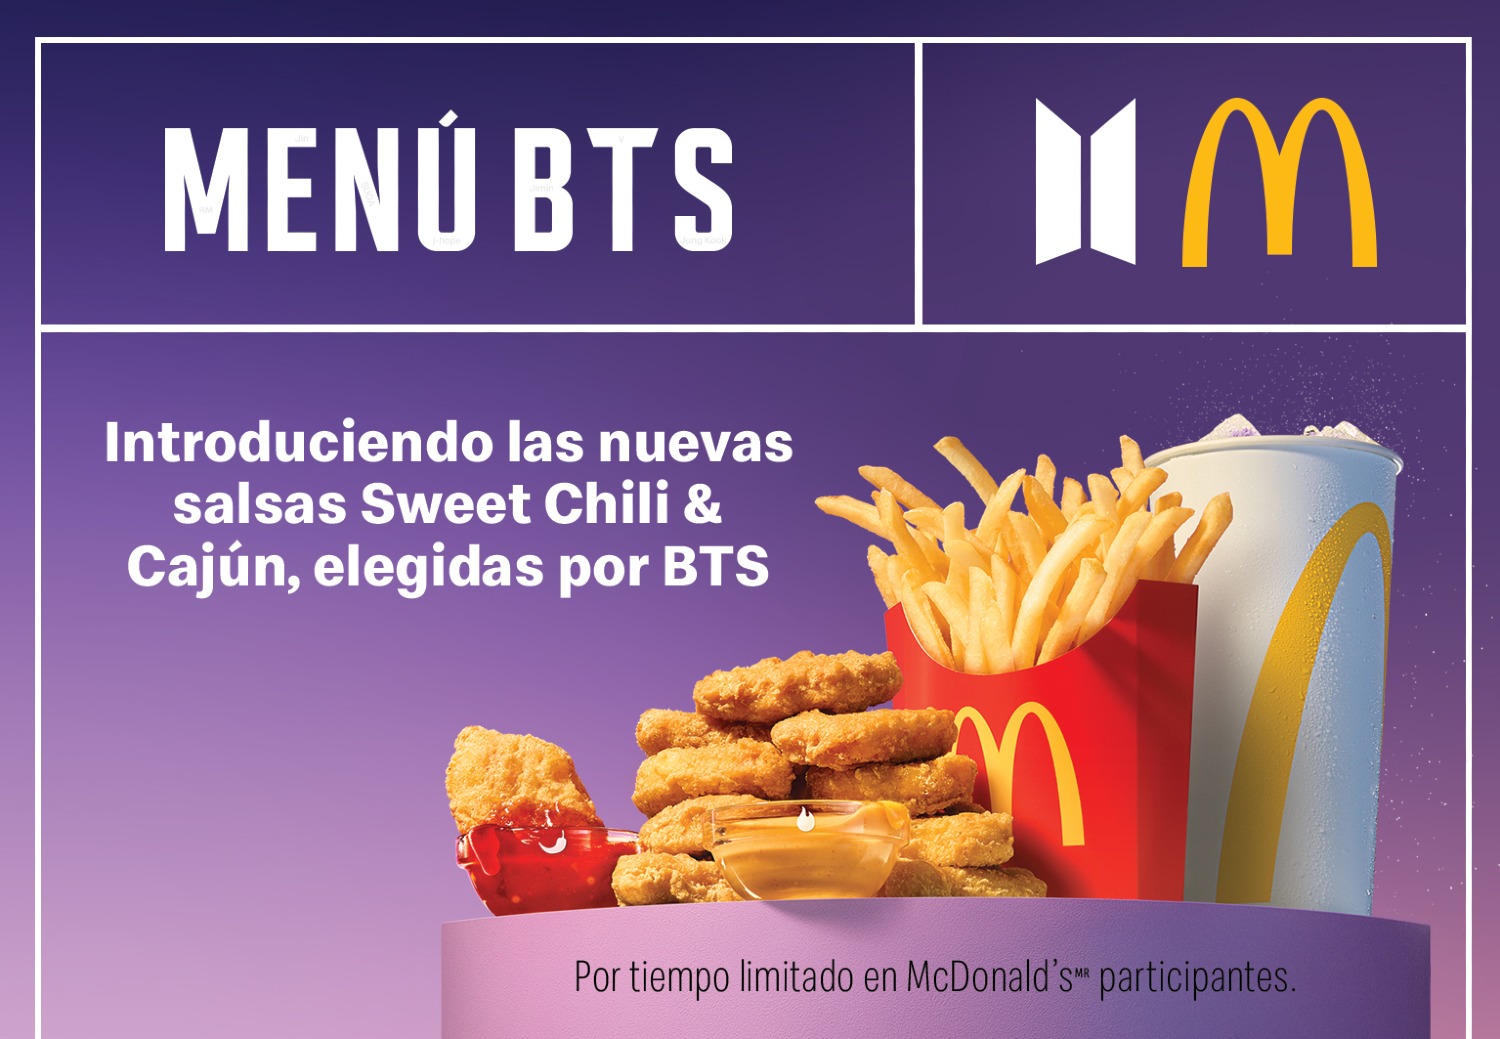 El Menú de la colaboración entre McDonald’s y BTS  llegó oficialmente 